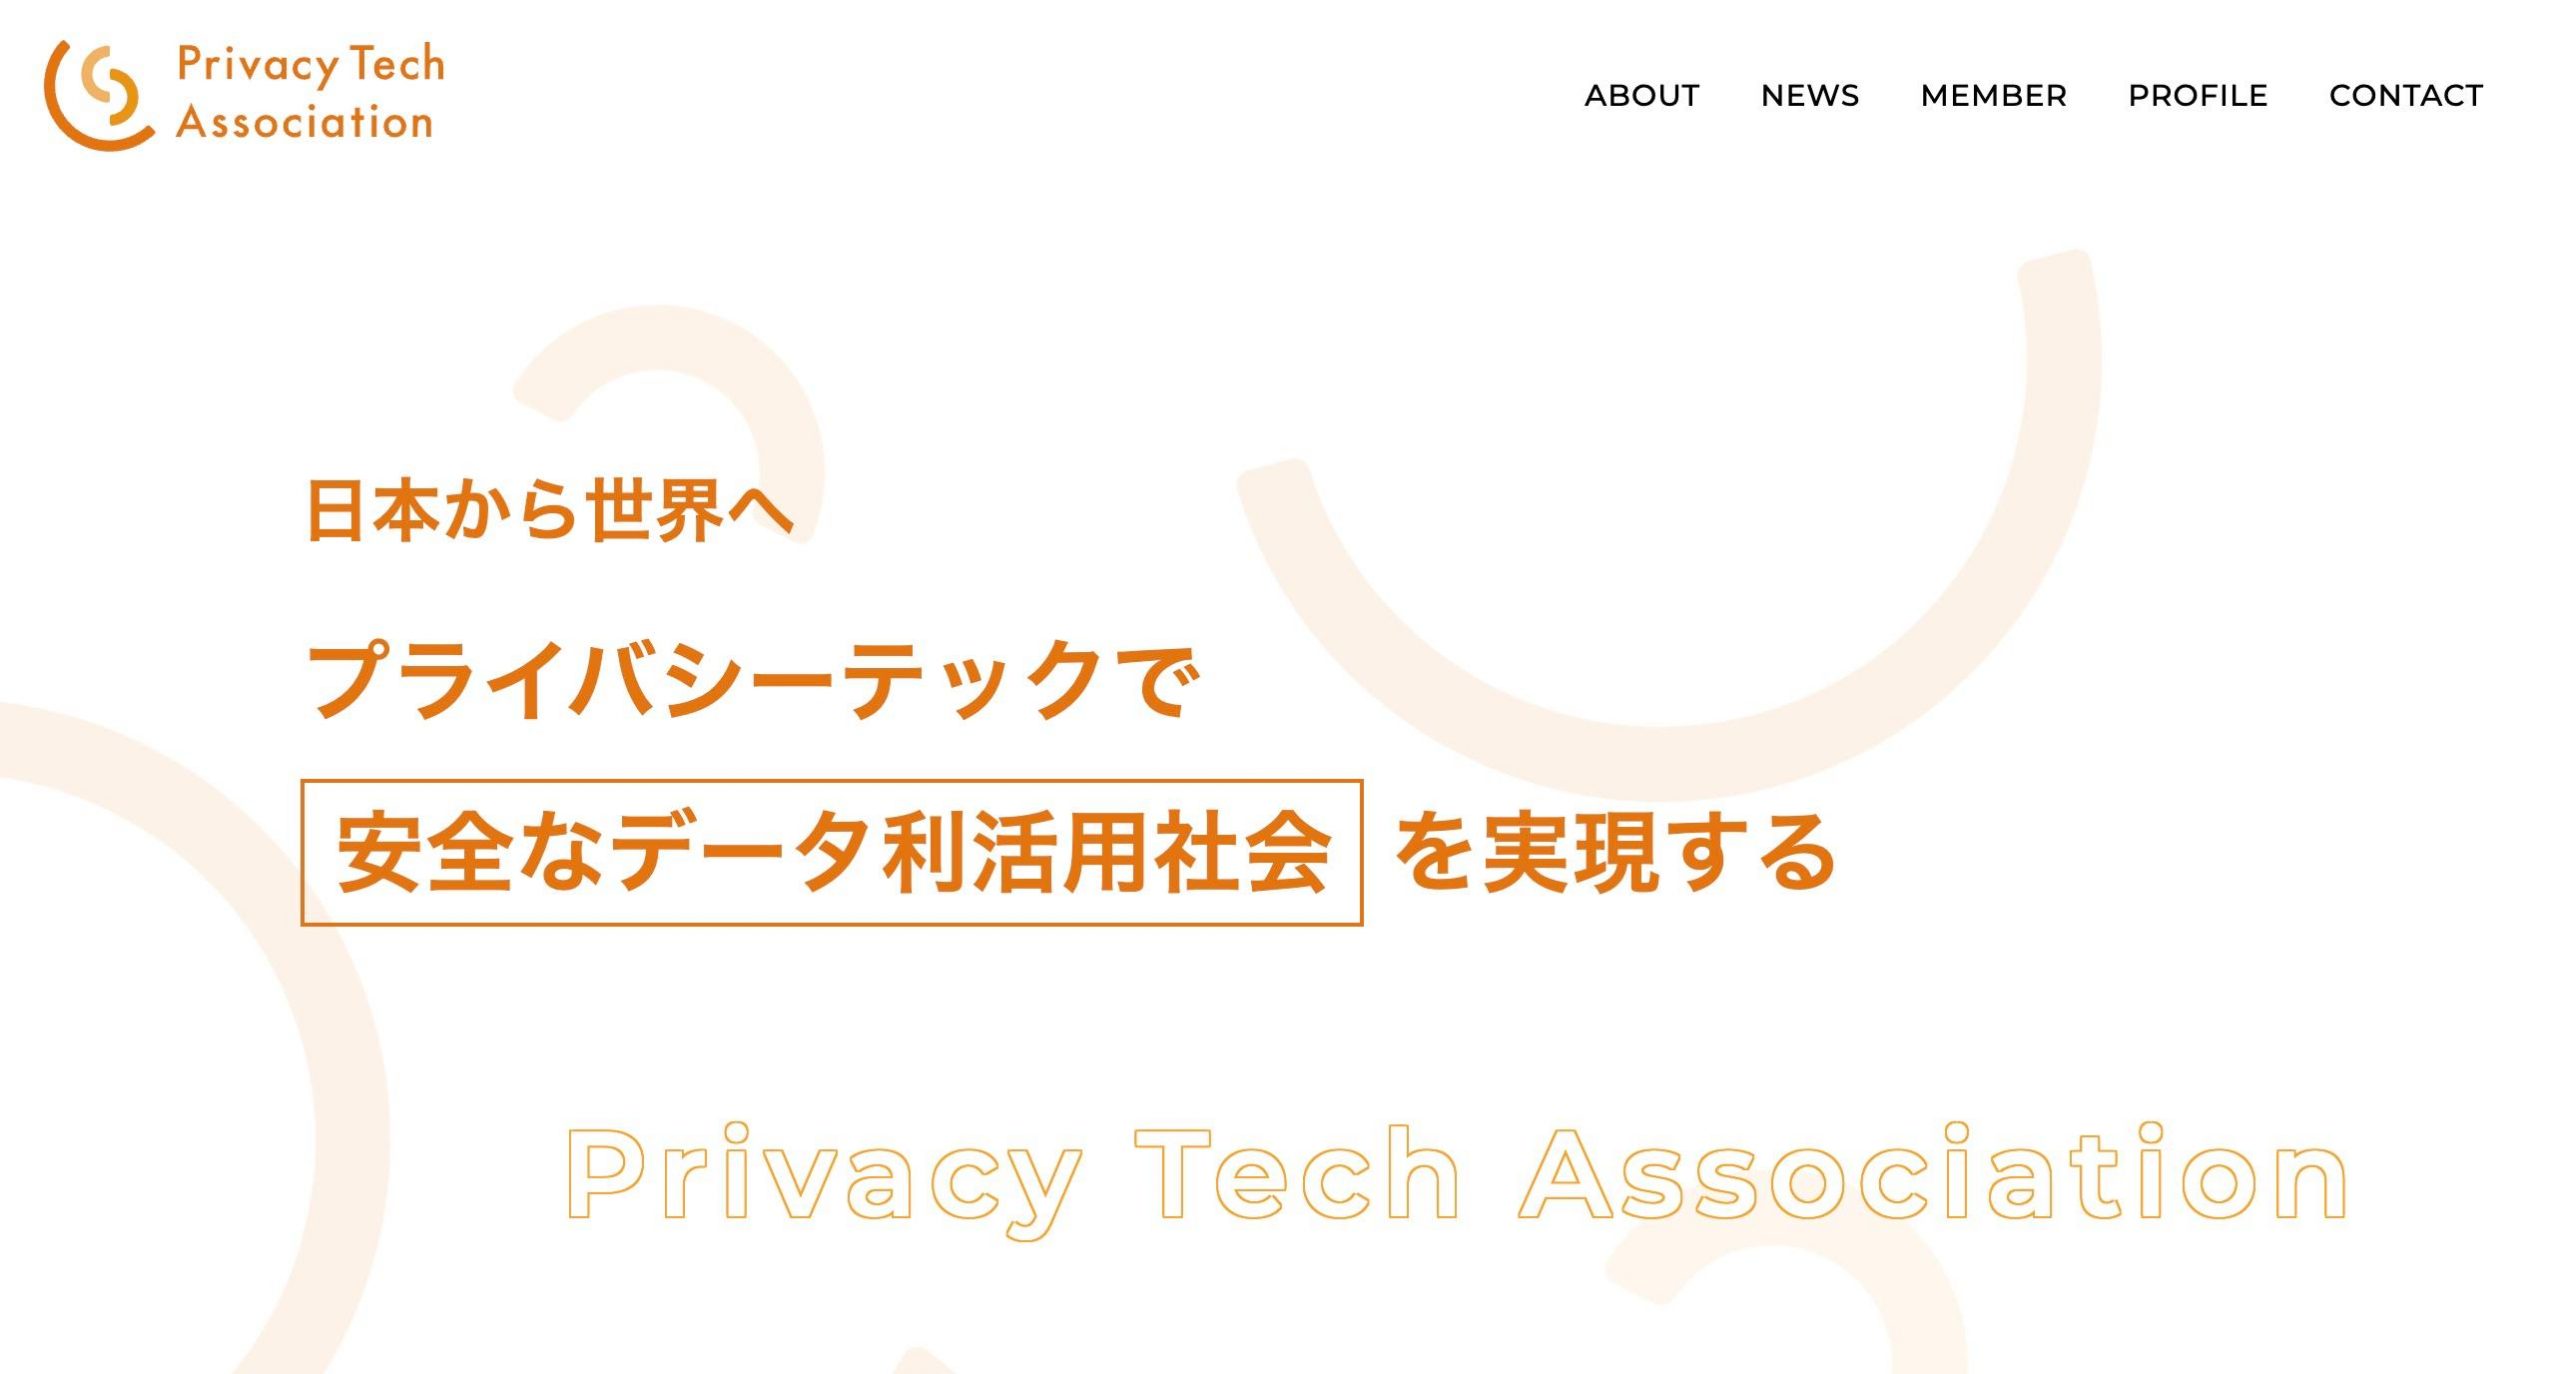 安田孝美教授がプライバシーテック協会のアドバイザーに就任しました。